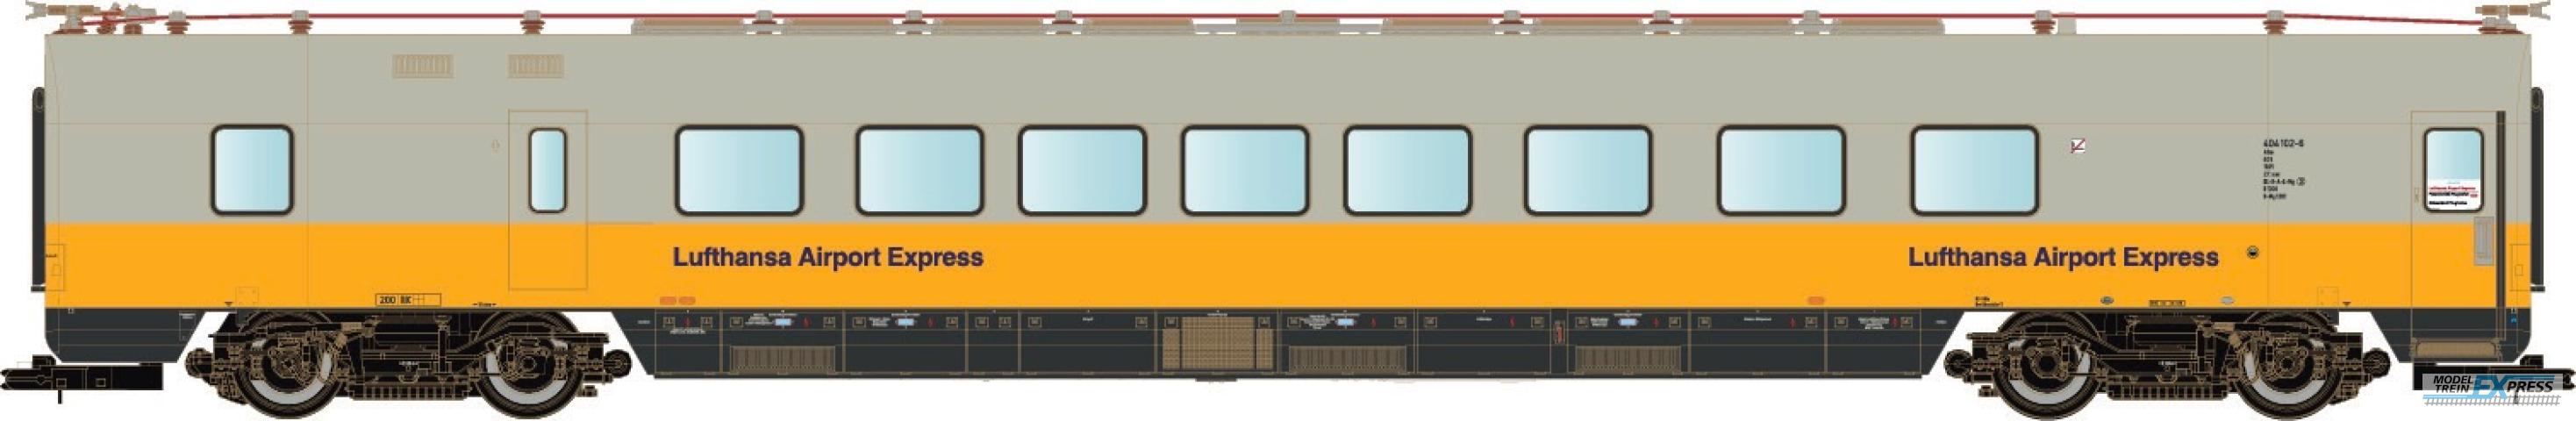 LS Models 16507 Restauratie rijtuig, geel/grijs,  Lufthansa Airport Express, versterkings wagen  /  Ep. IVC-VA  /  DB  /  HO  /  AC  /  1 P.